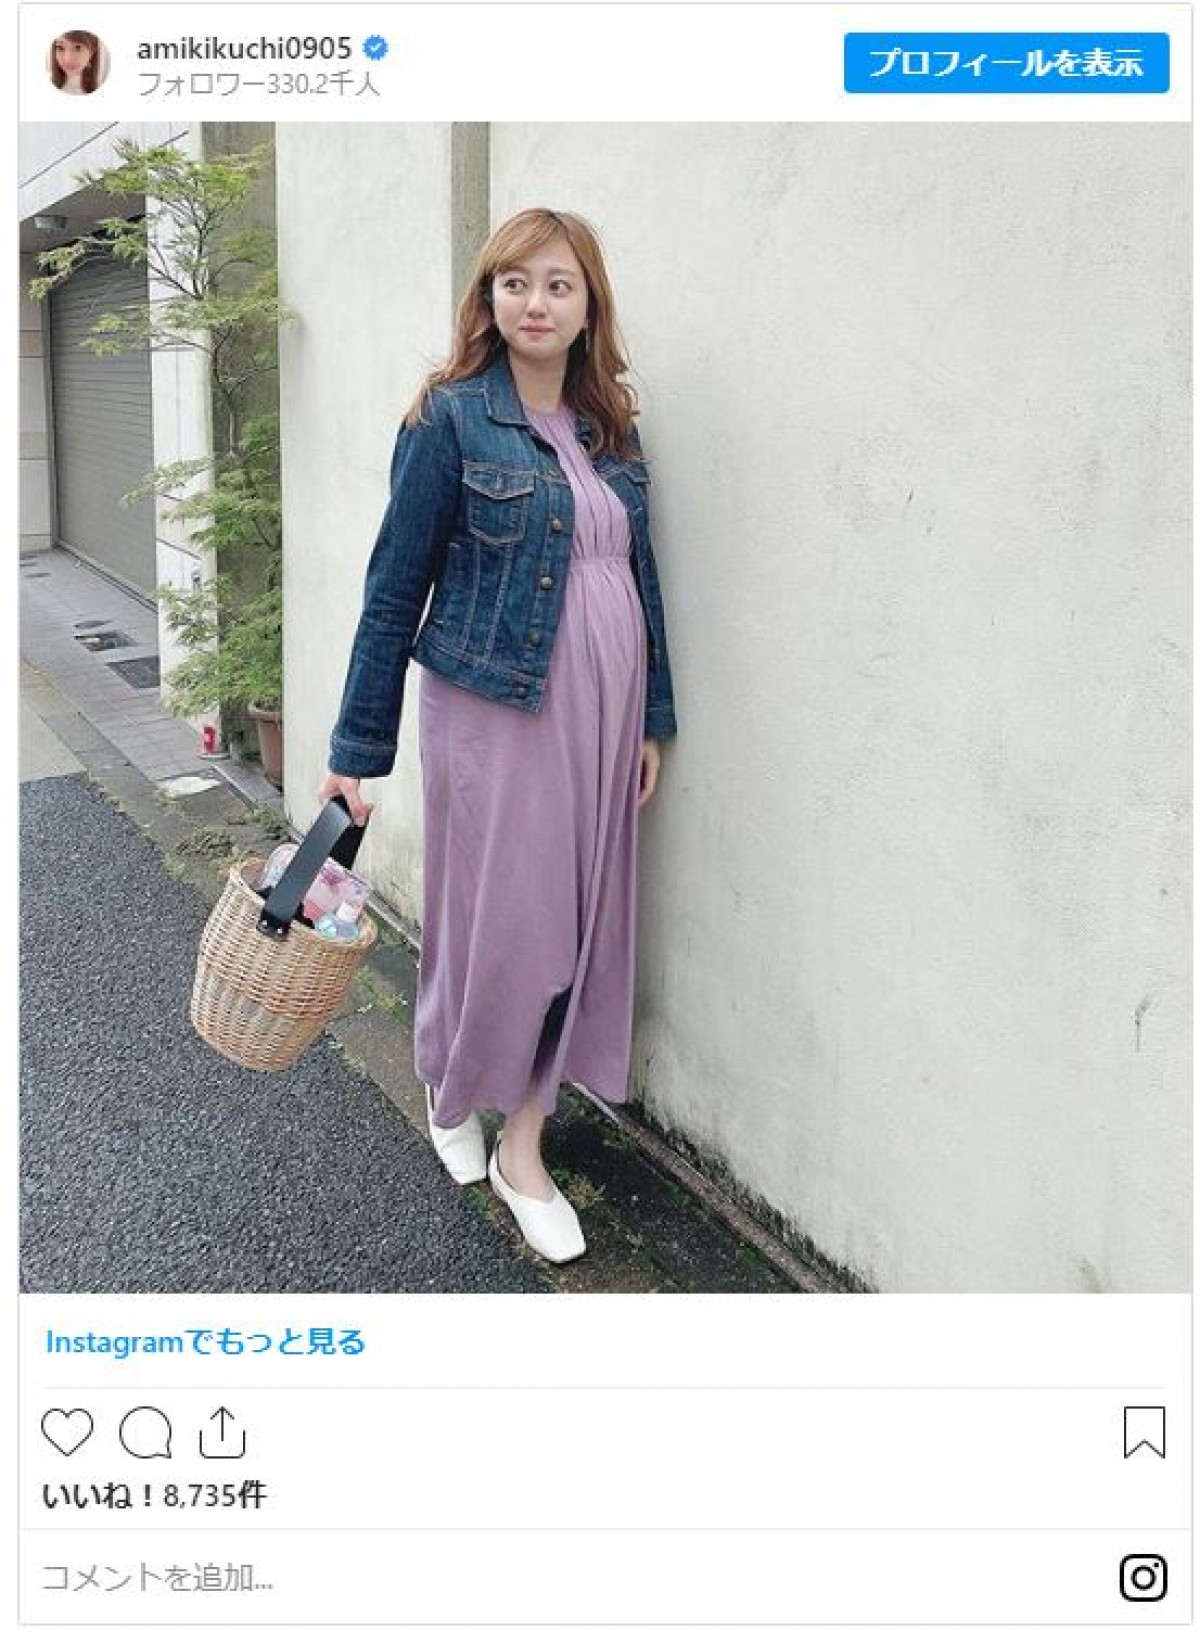 菊地亜美、妊娠9ヵ月“マタニティショット” 「オシャレな妊婦さん」と好評